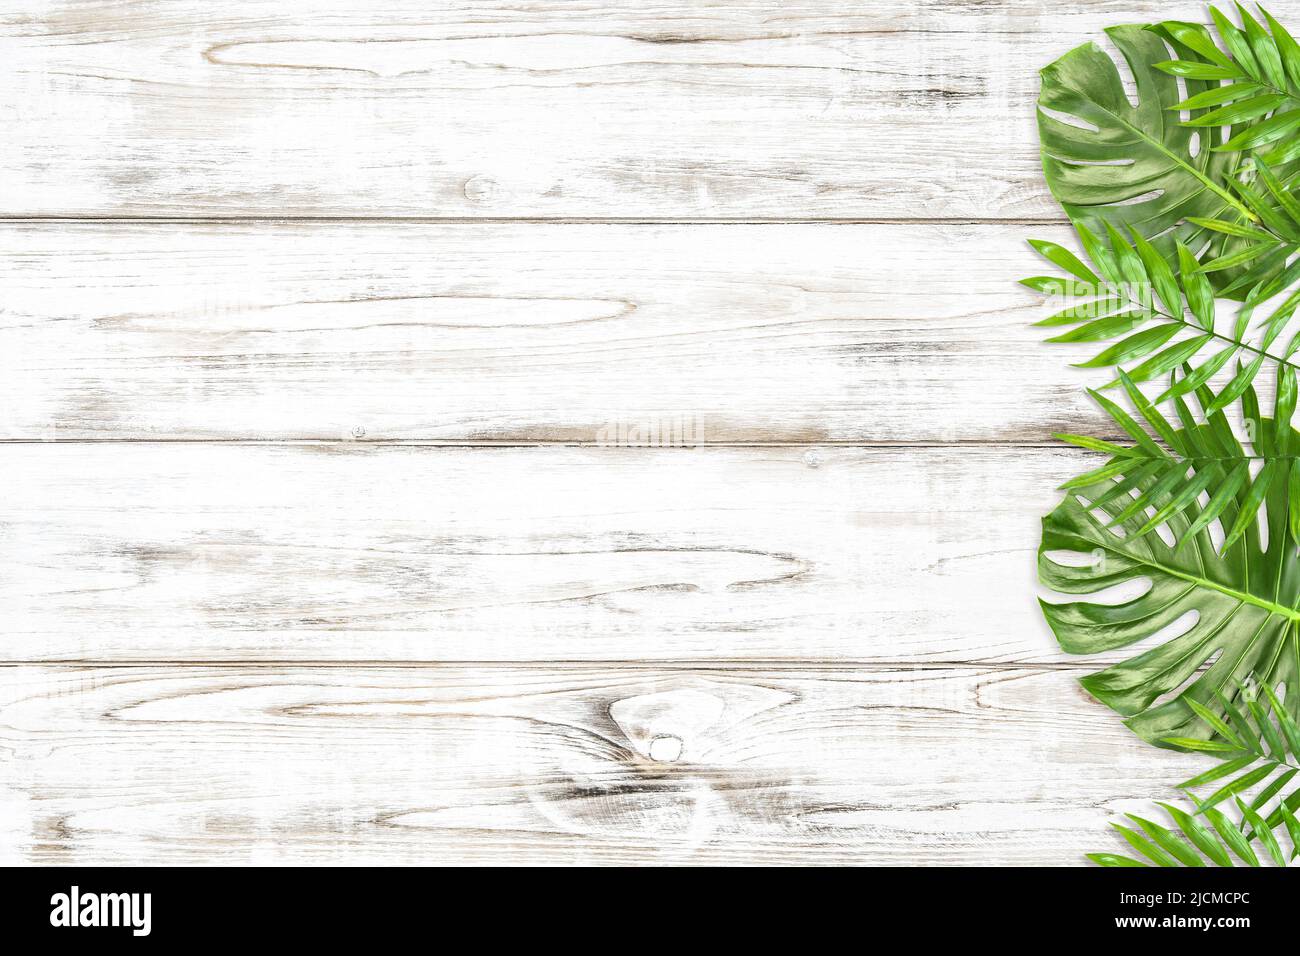 Fond floral avec une monstère verte et des feuilles de palmier sur fond en bois clair Banque D'Images